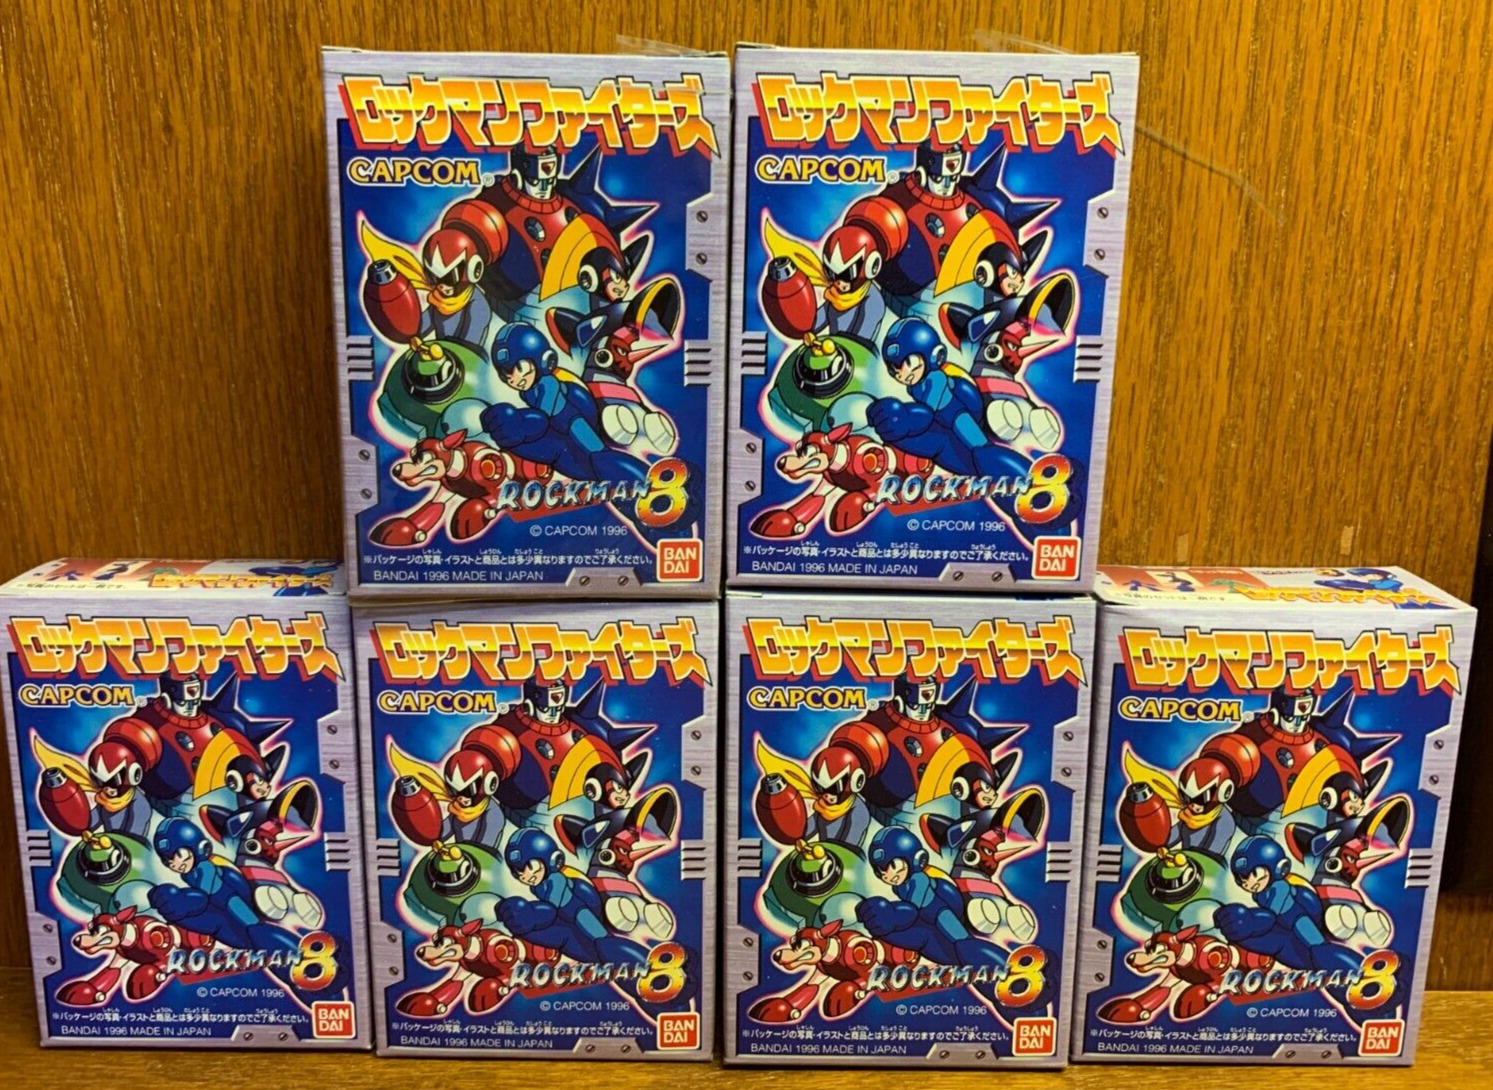 1996 Bandai Capcom Rockman 8 Mega Man Shokugan Toy PVC Set of 6